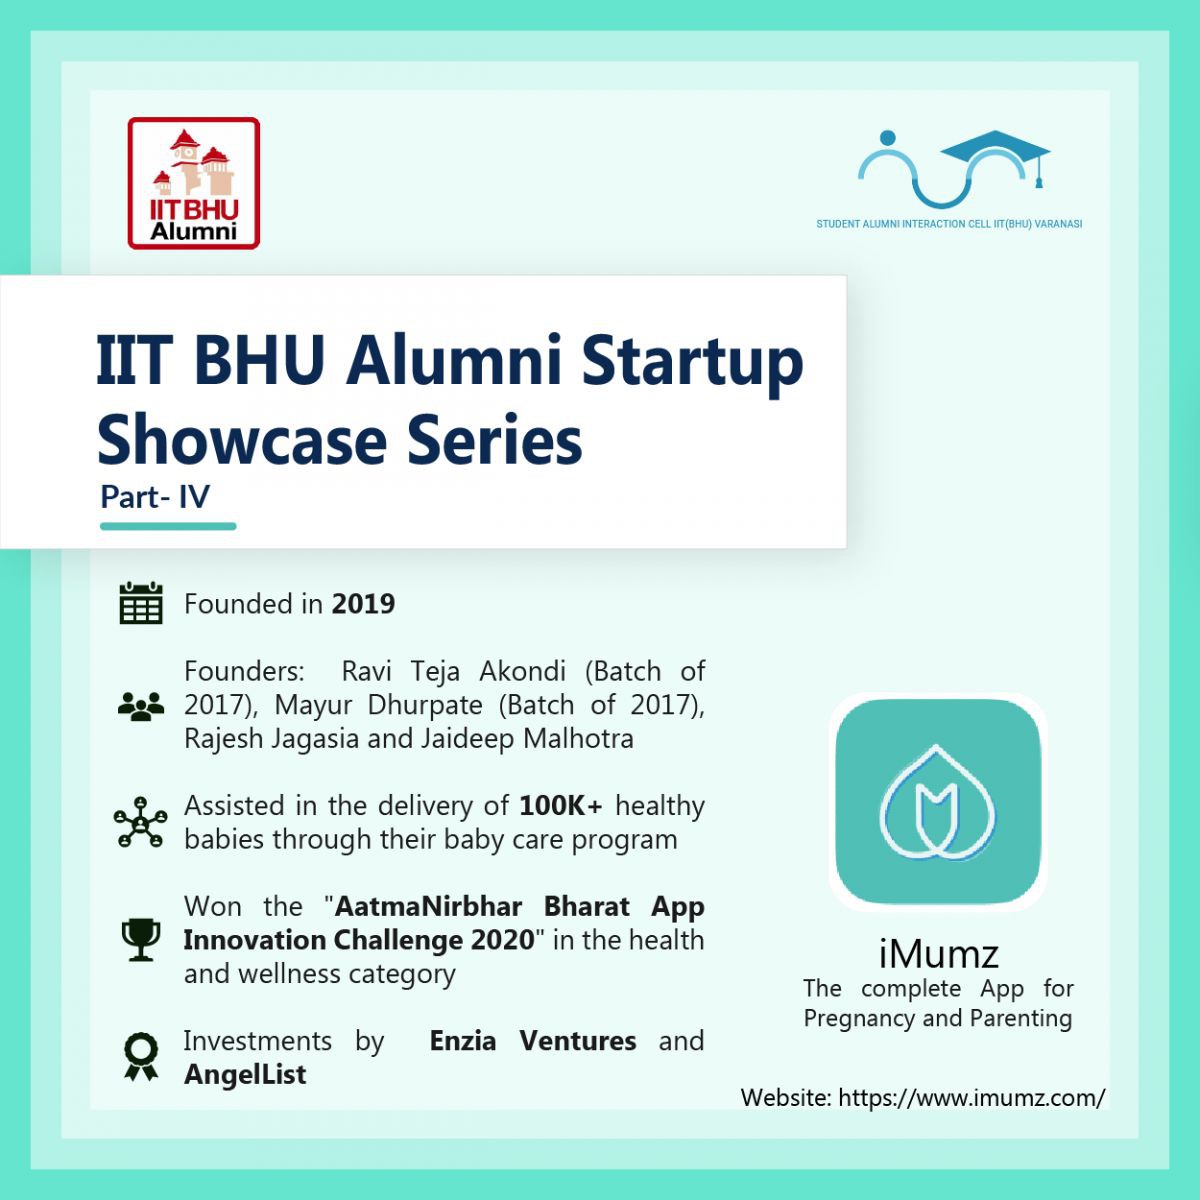 IIT BHU Alumni Start-up Showcase Series: iMumz